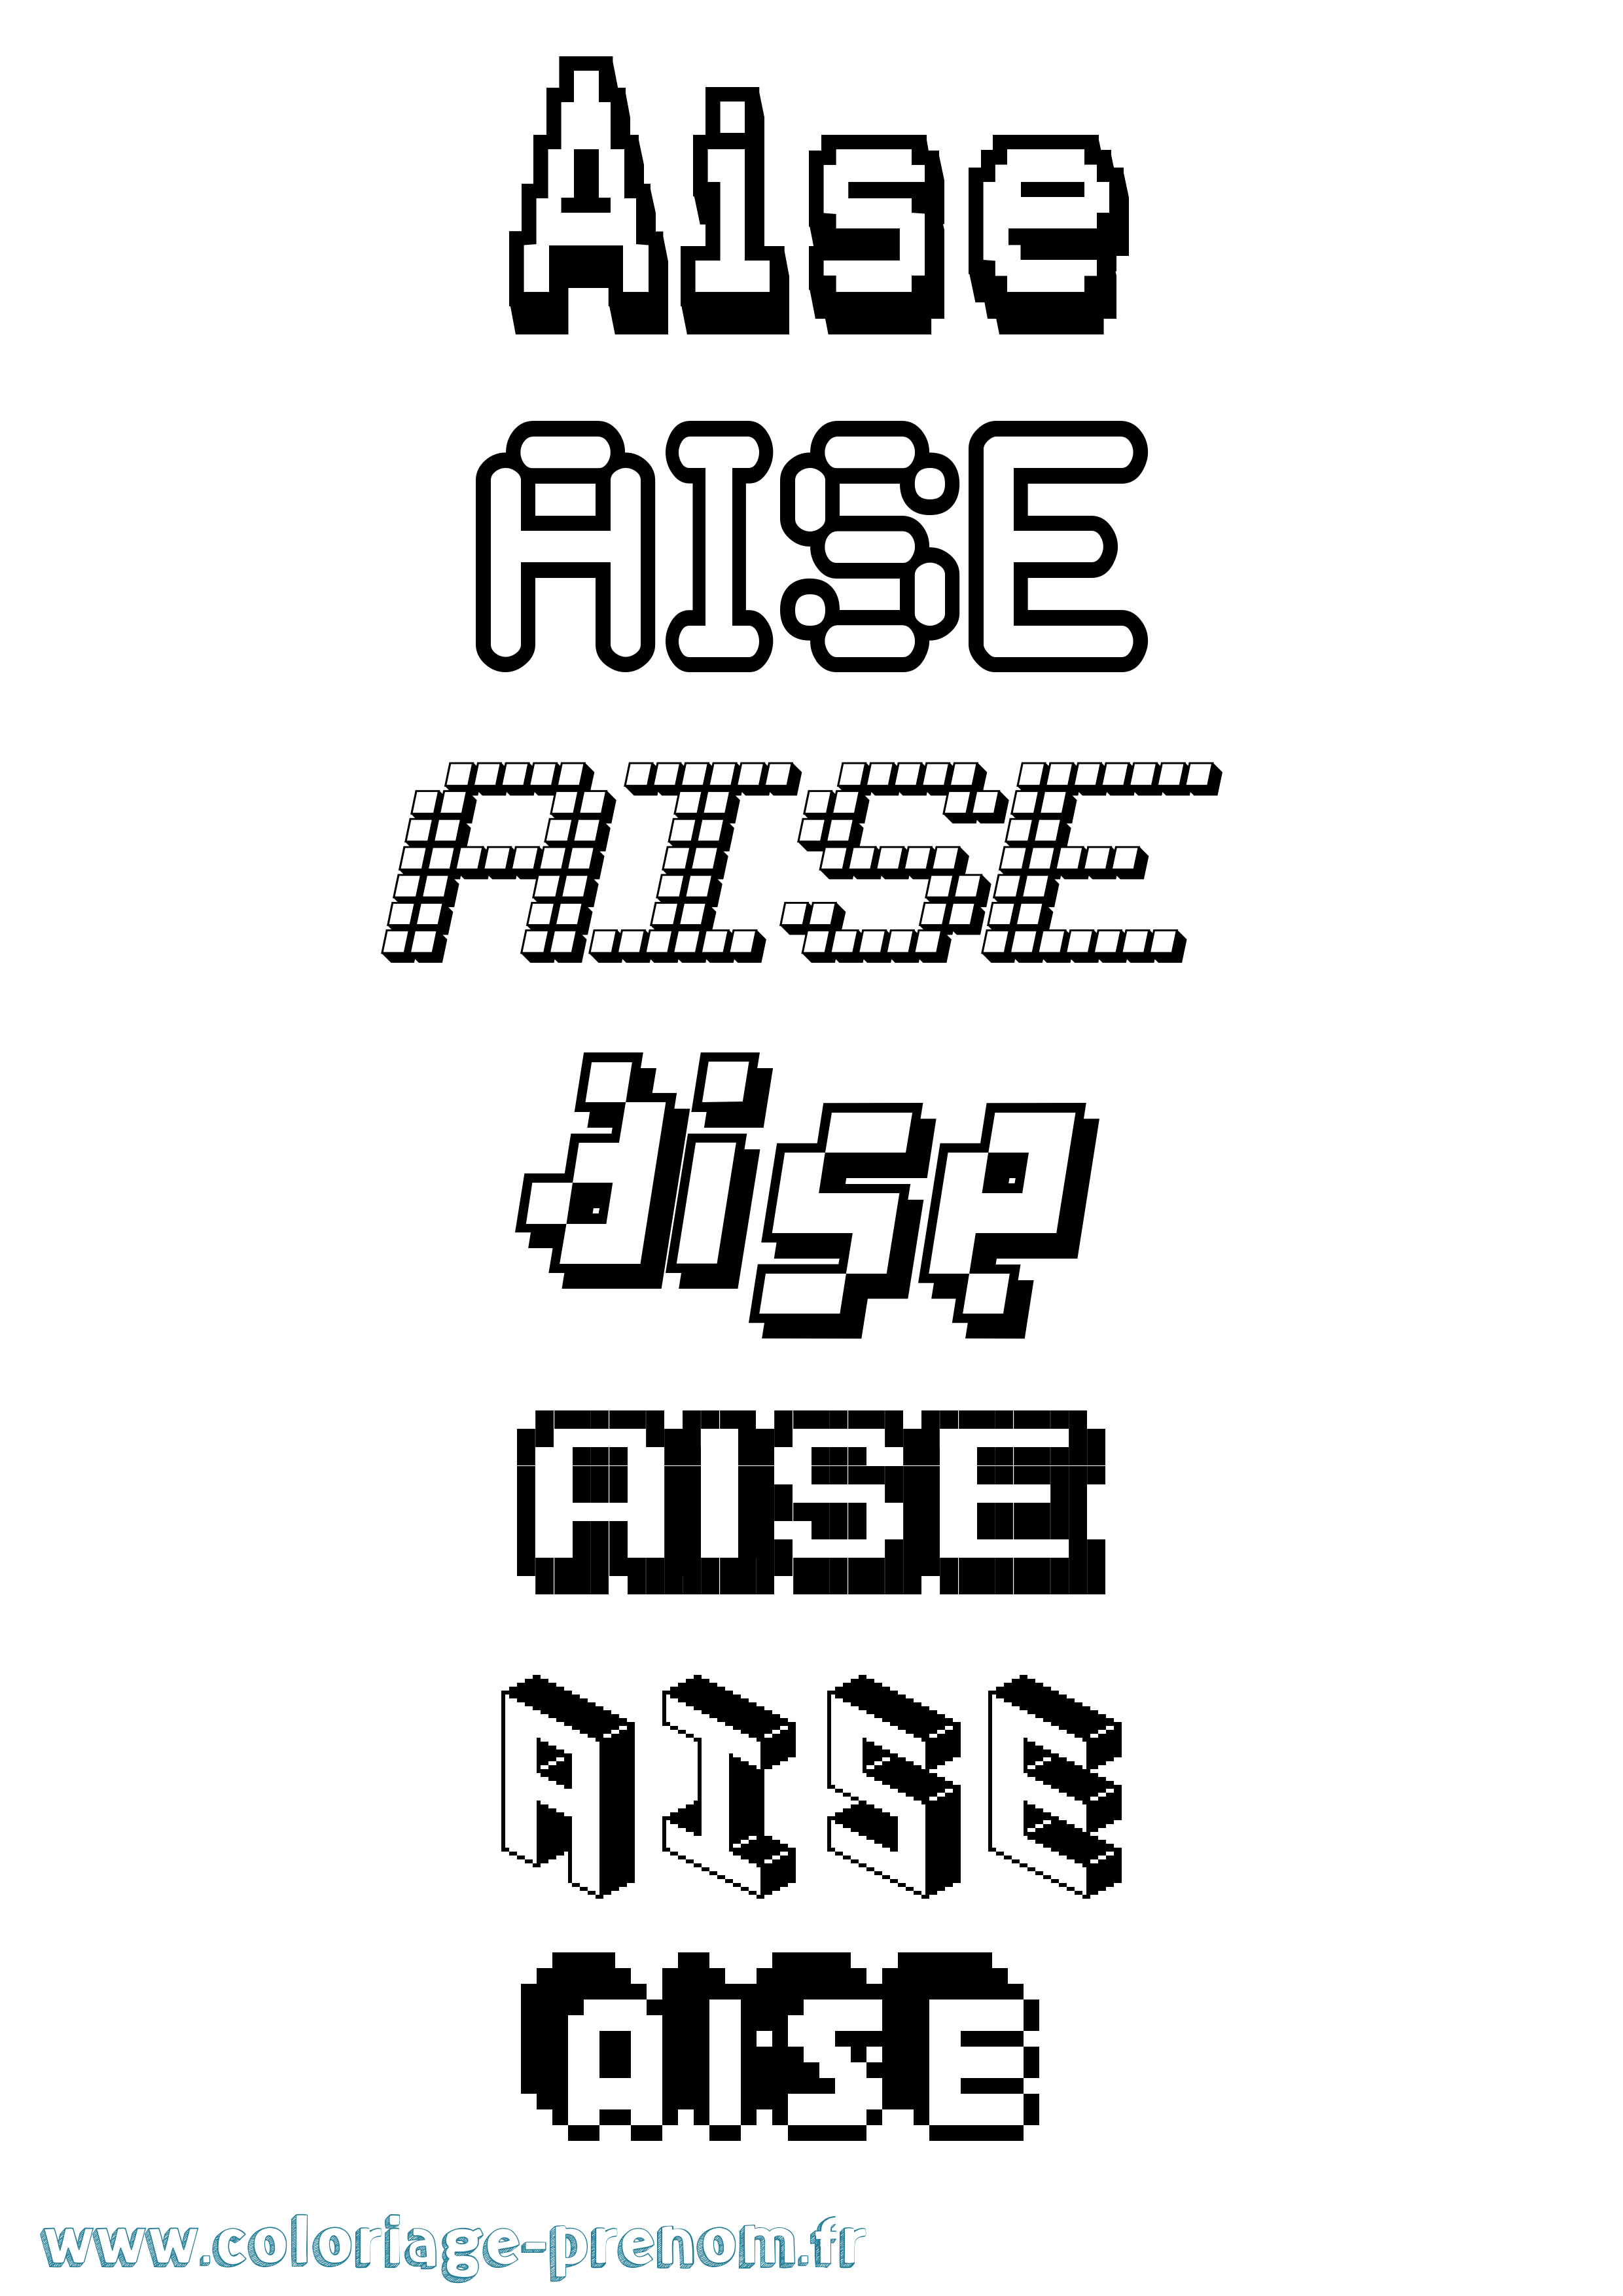 Coloriage prénom Aise Pixel